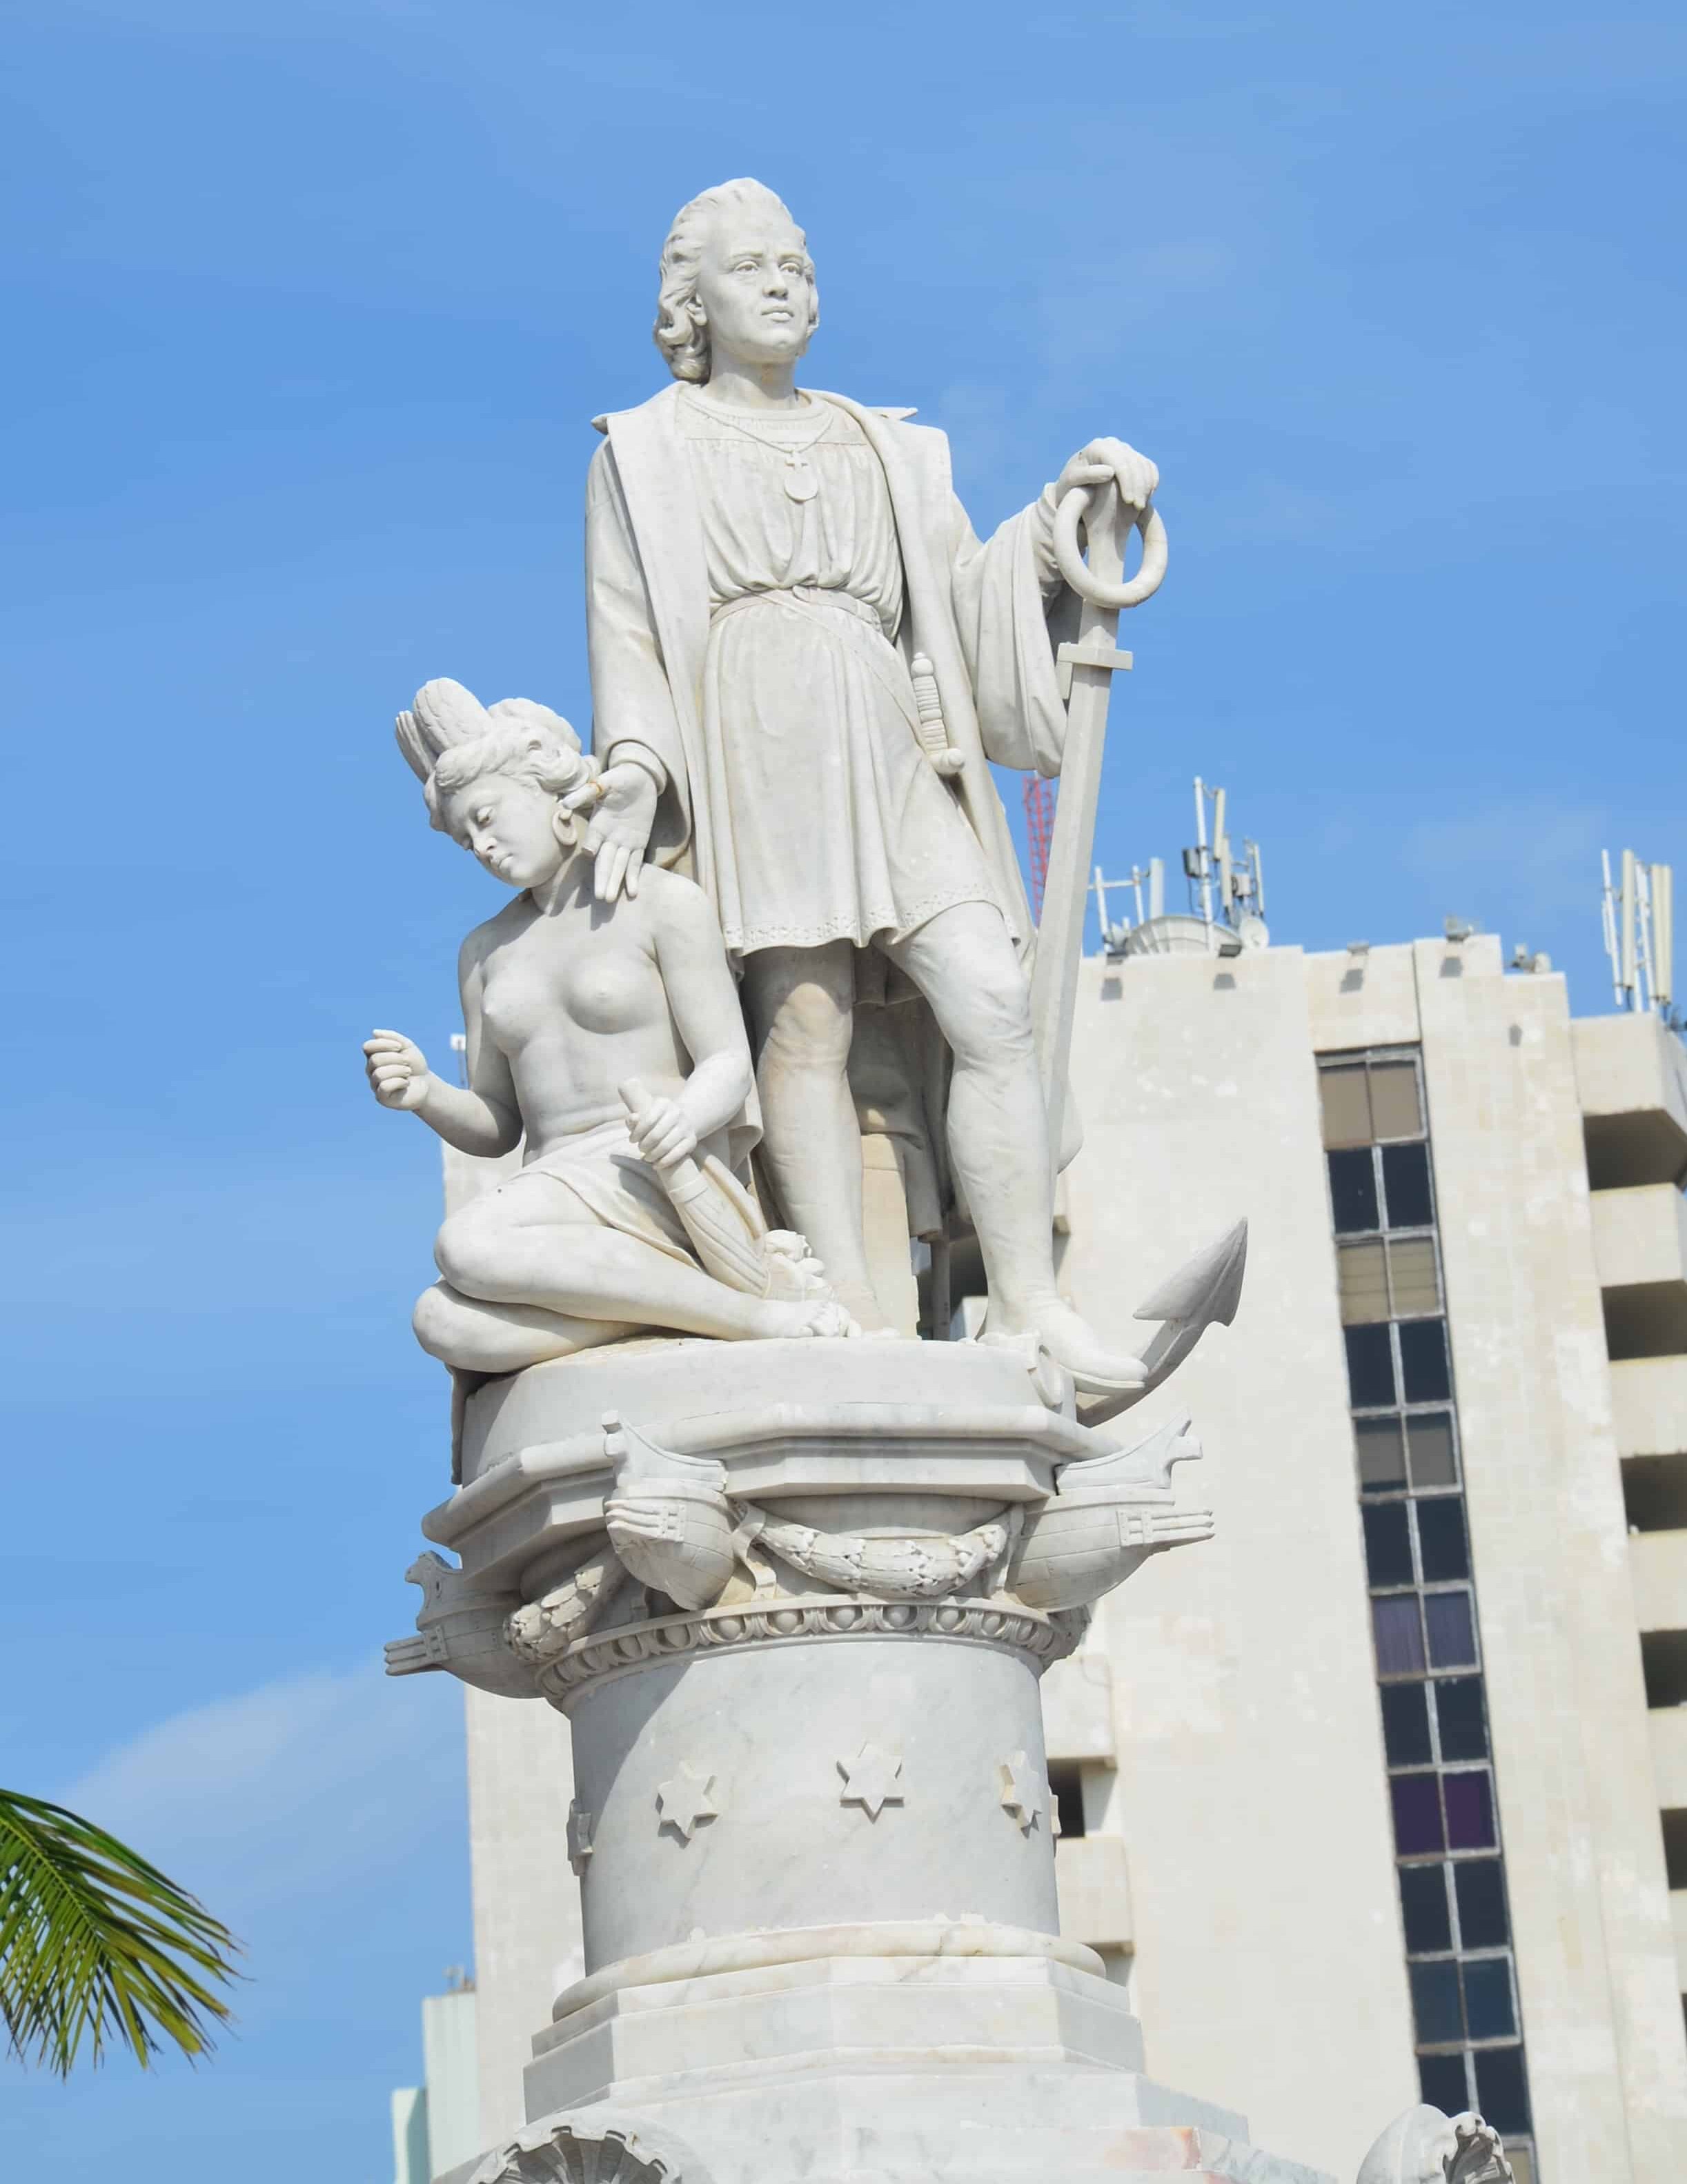 Christopher Columbus statue in Plaza de la Aduana in El Centro, Cartagena, Bolívar, Colombia